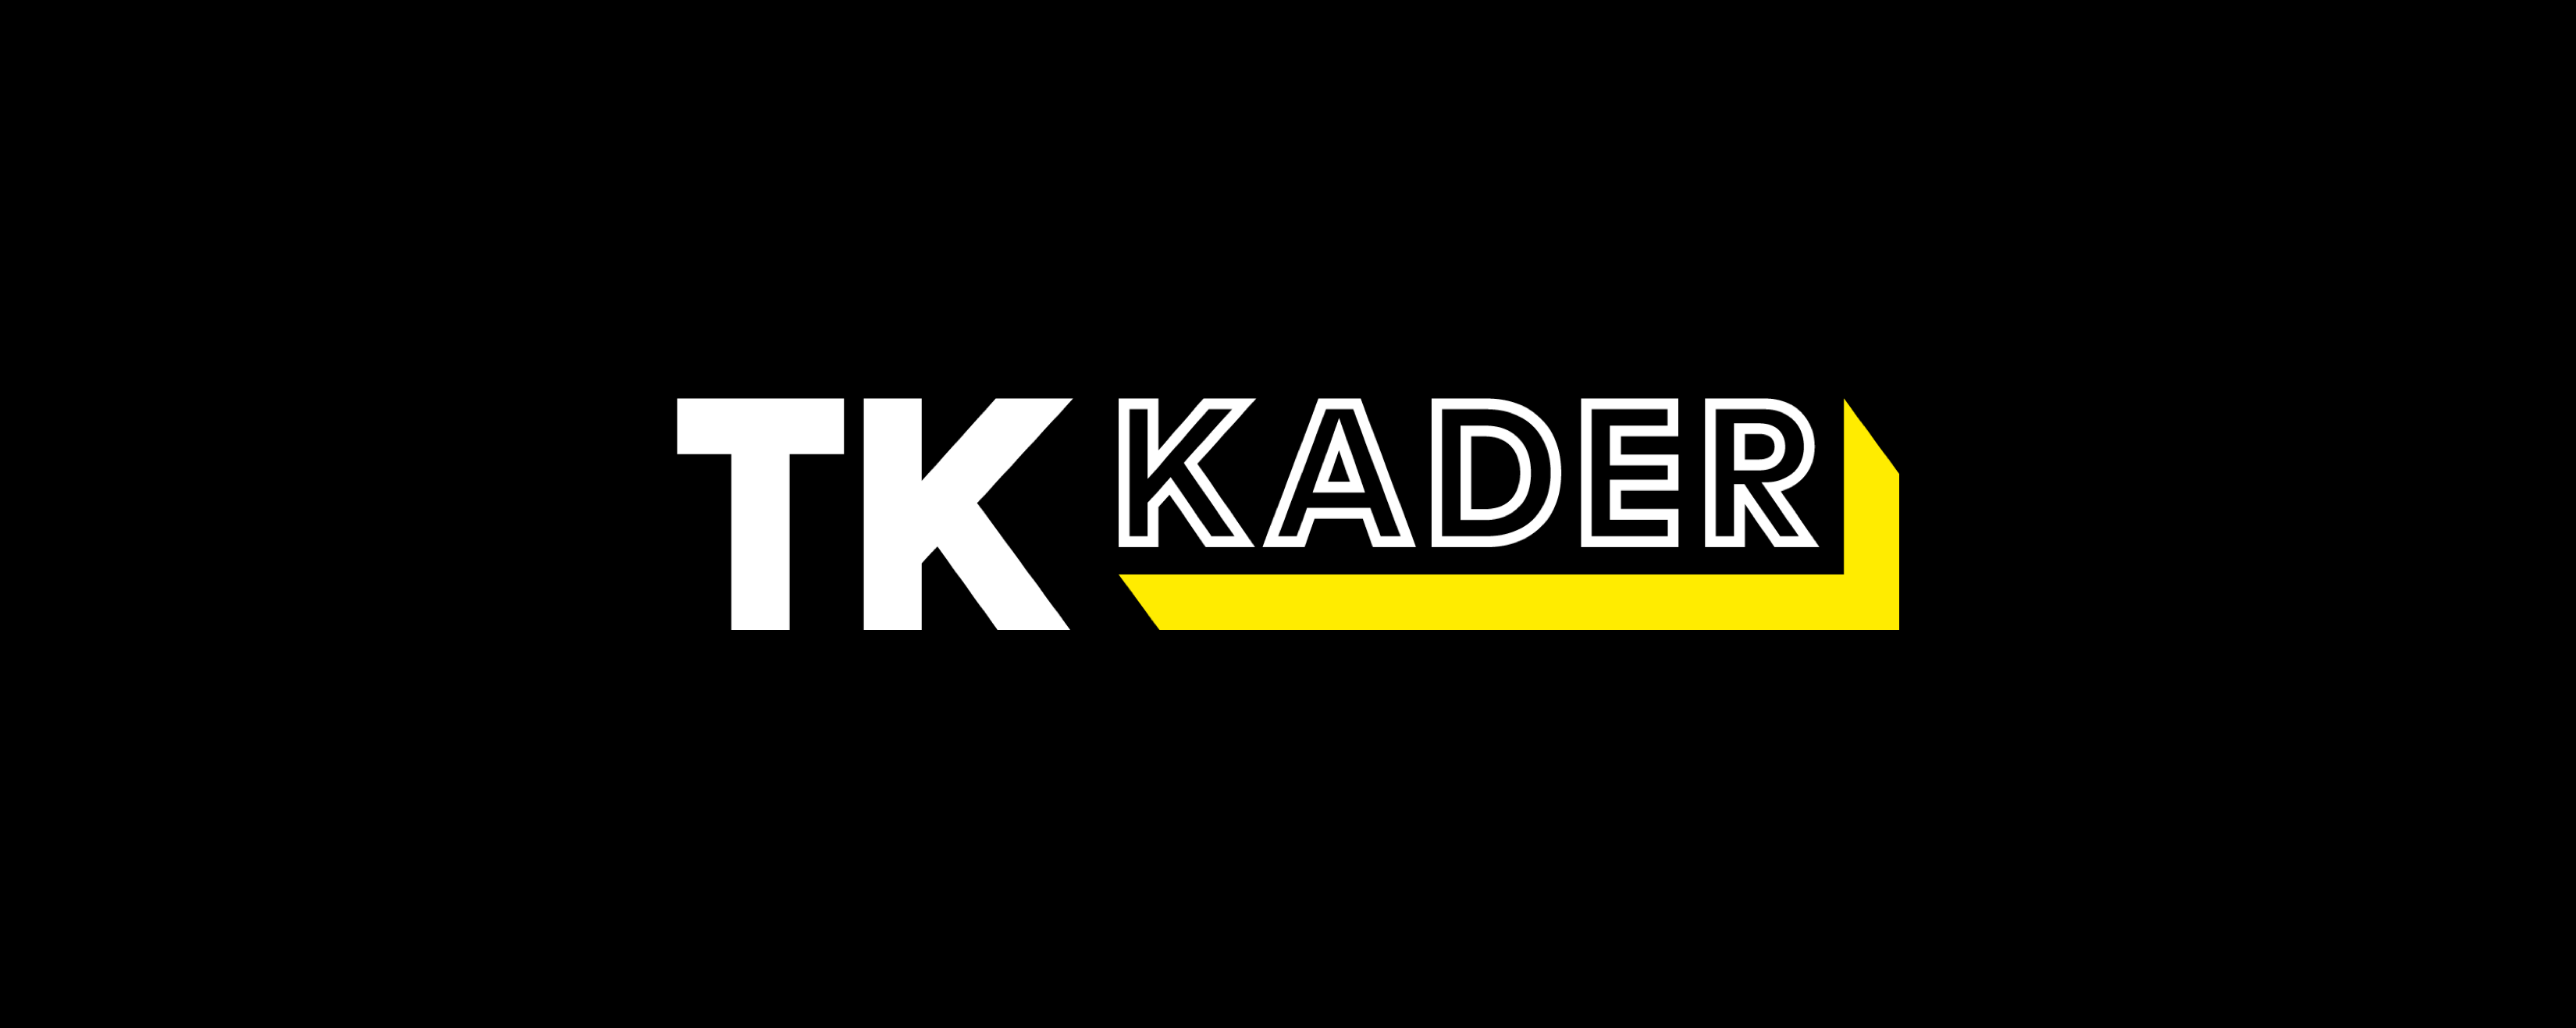 The logo for TK Kader